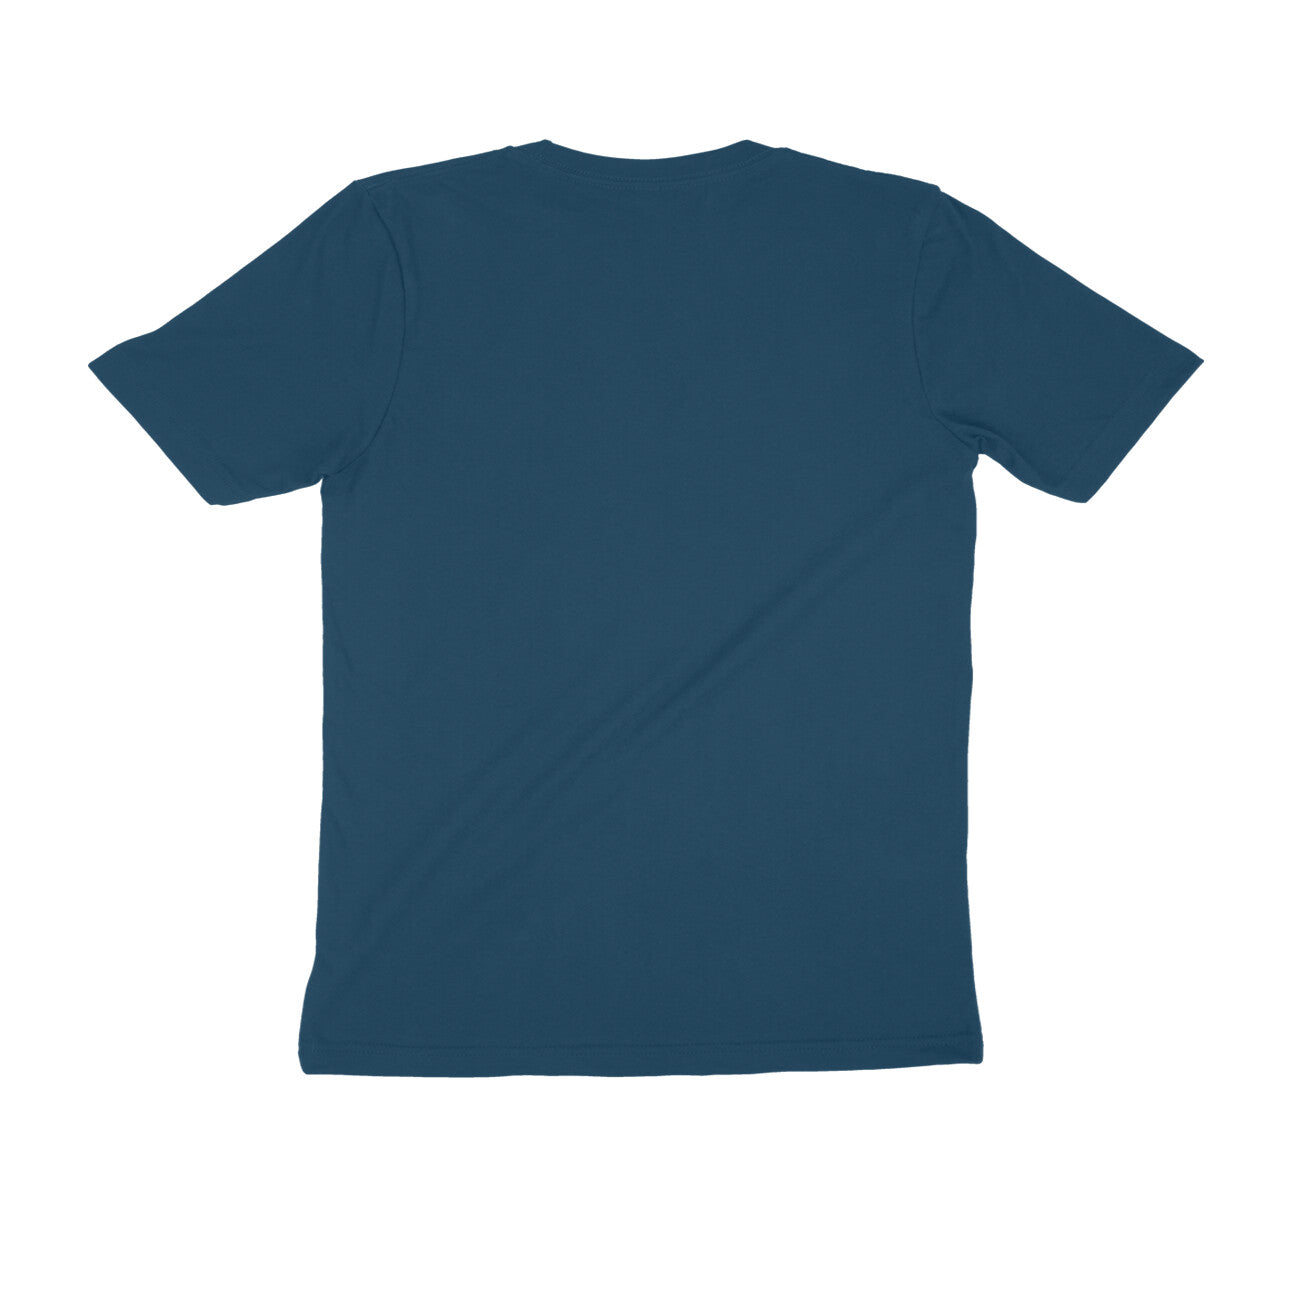 Stay Curious - Sleek Design T-shirt - Men